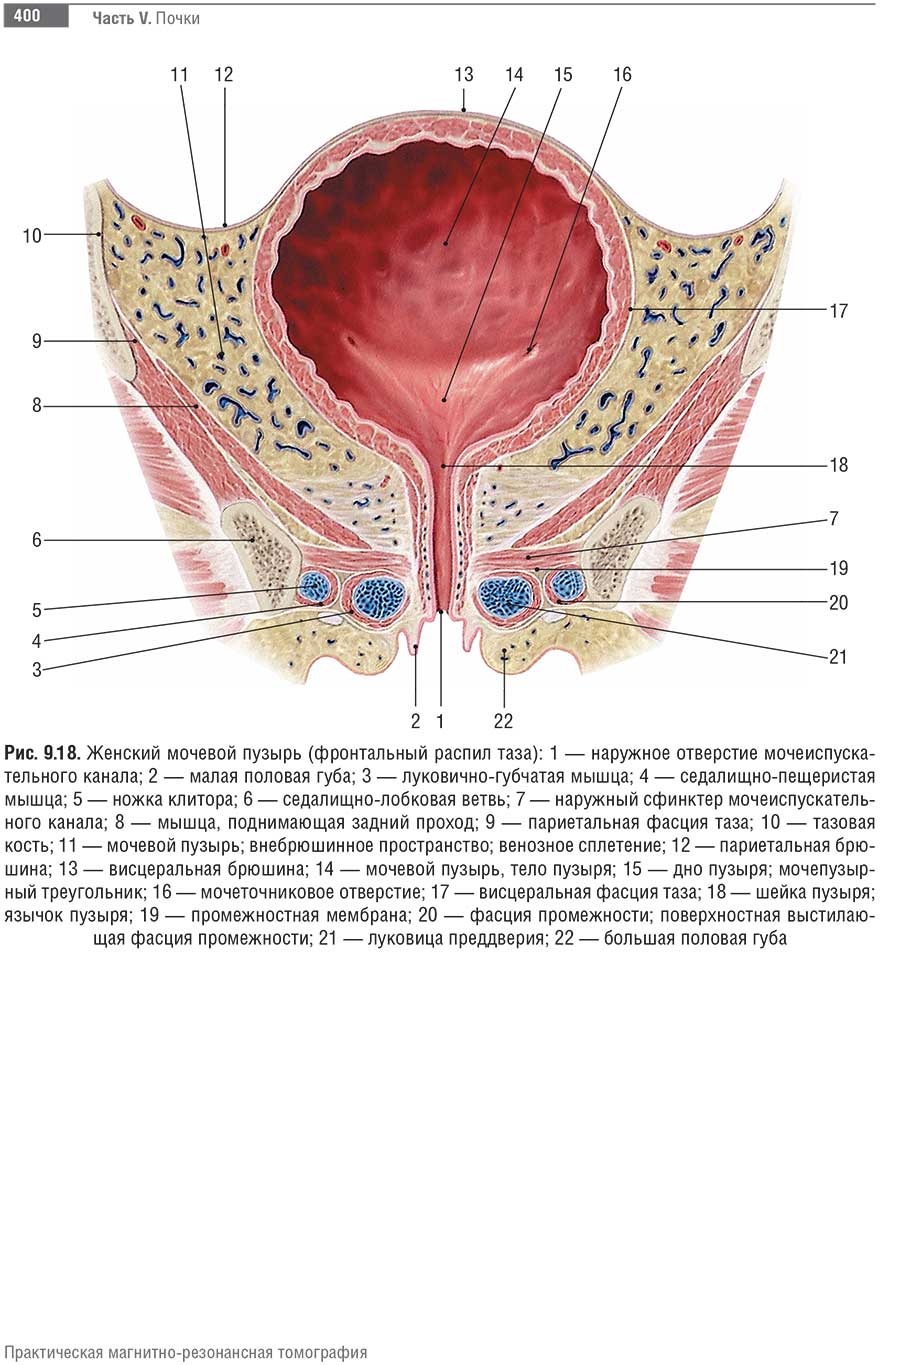 Женский мочевой пузырь (фронтальный распил таза)